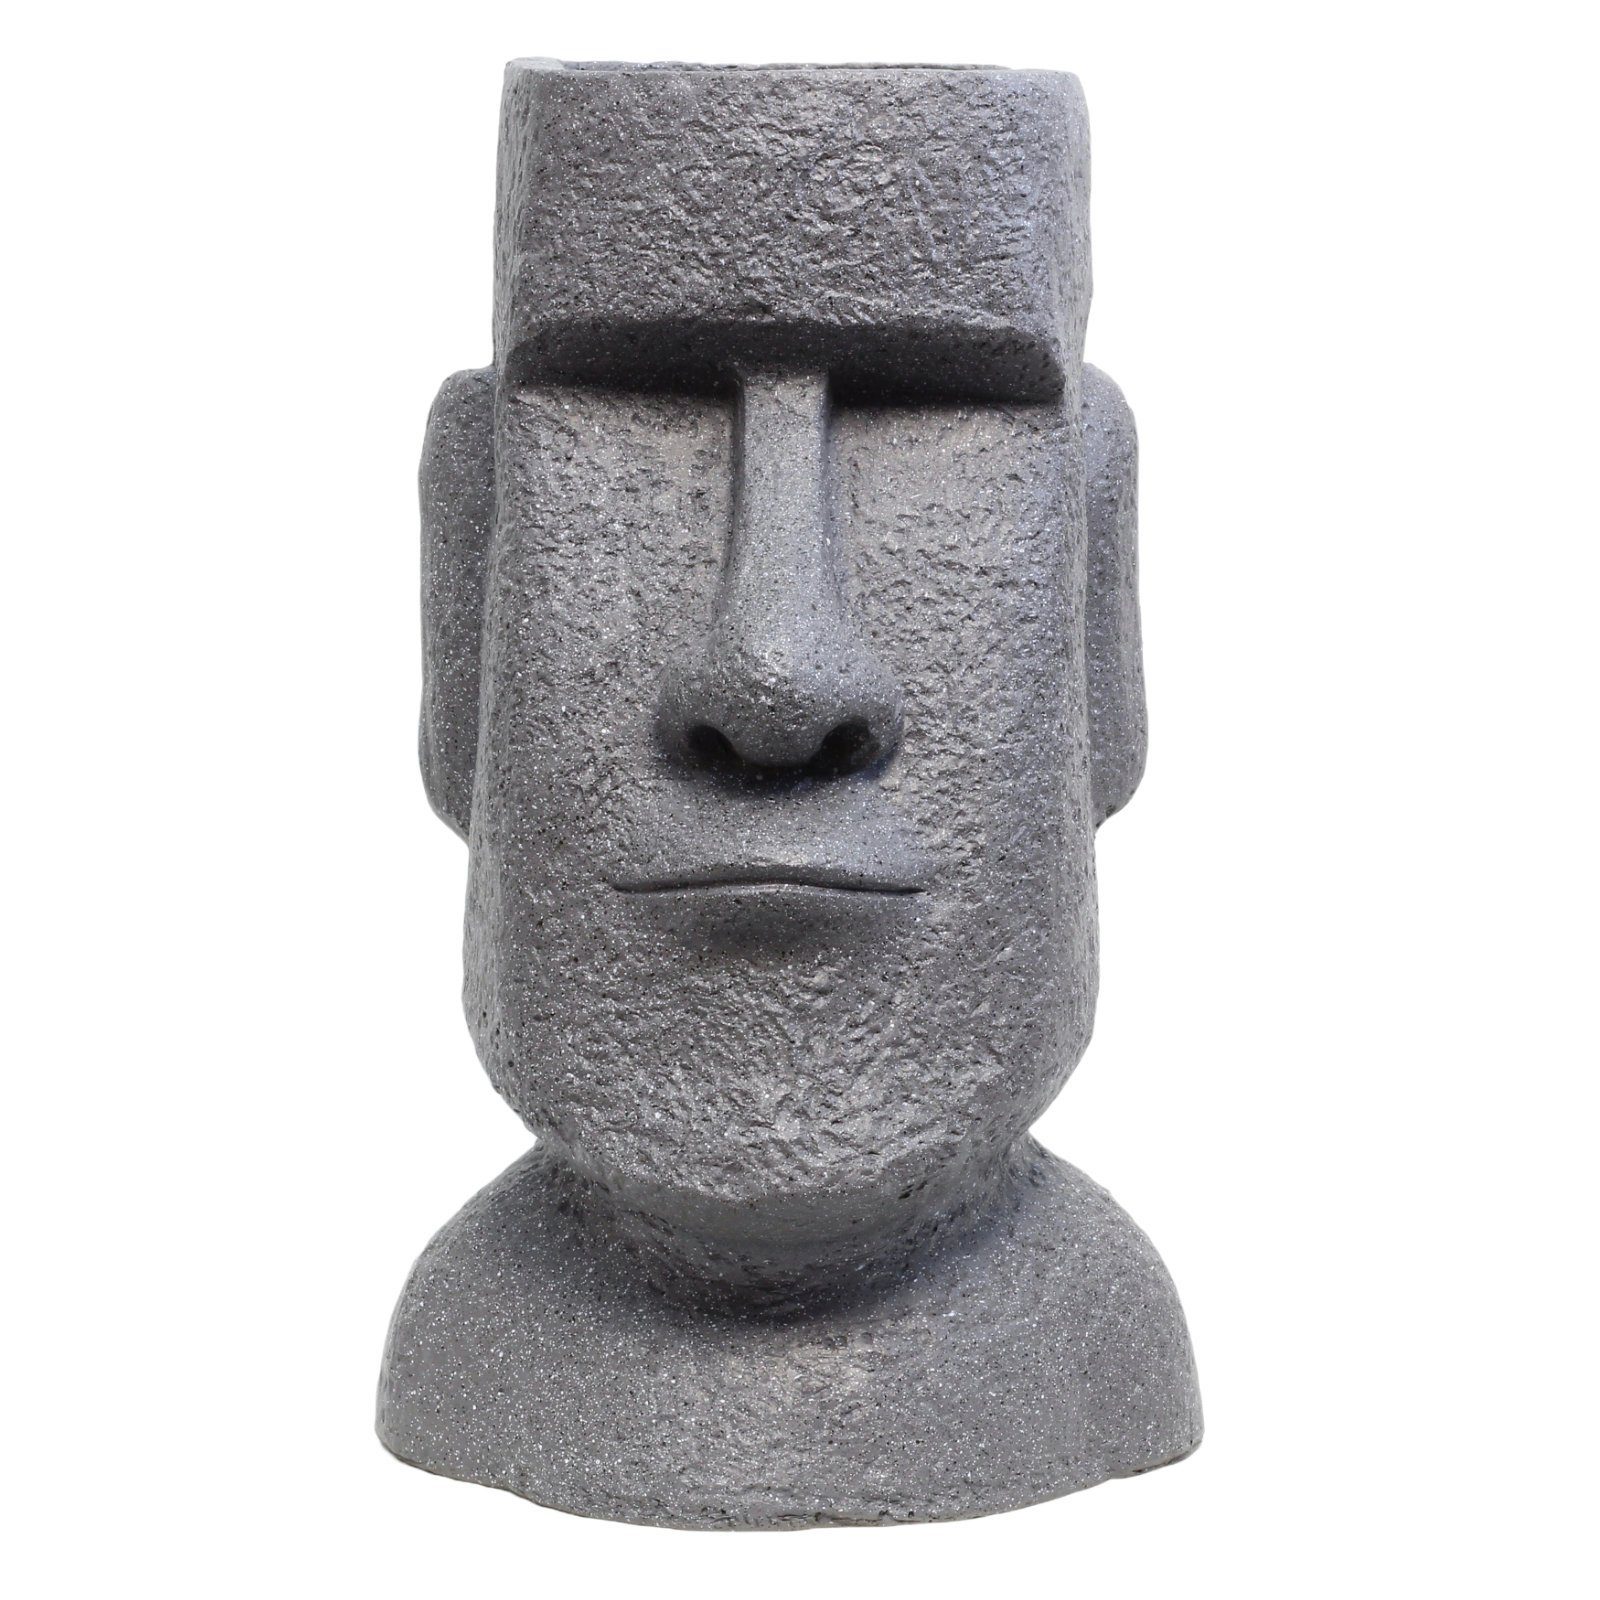 Outdoor Blickfang Grau Mystisch HAGO Blumentopf Buddhafigur Osterinsel Moai Eye-Catcher